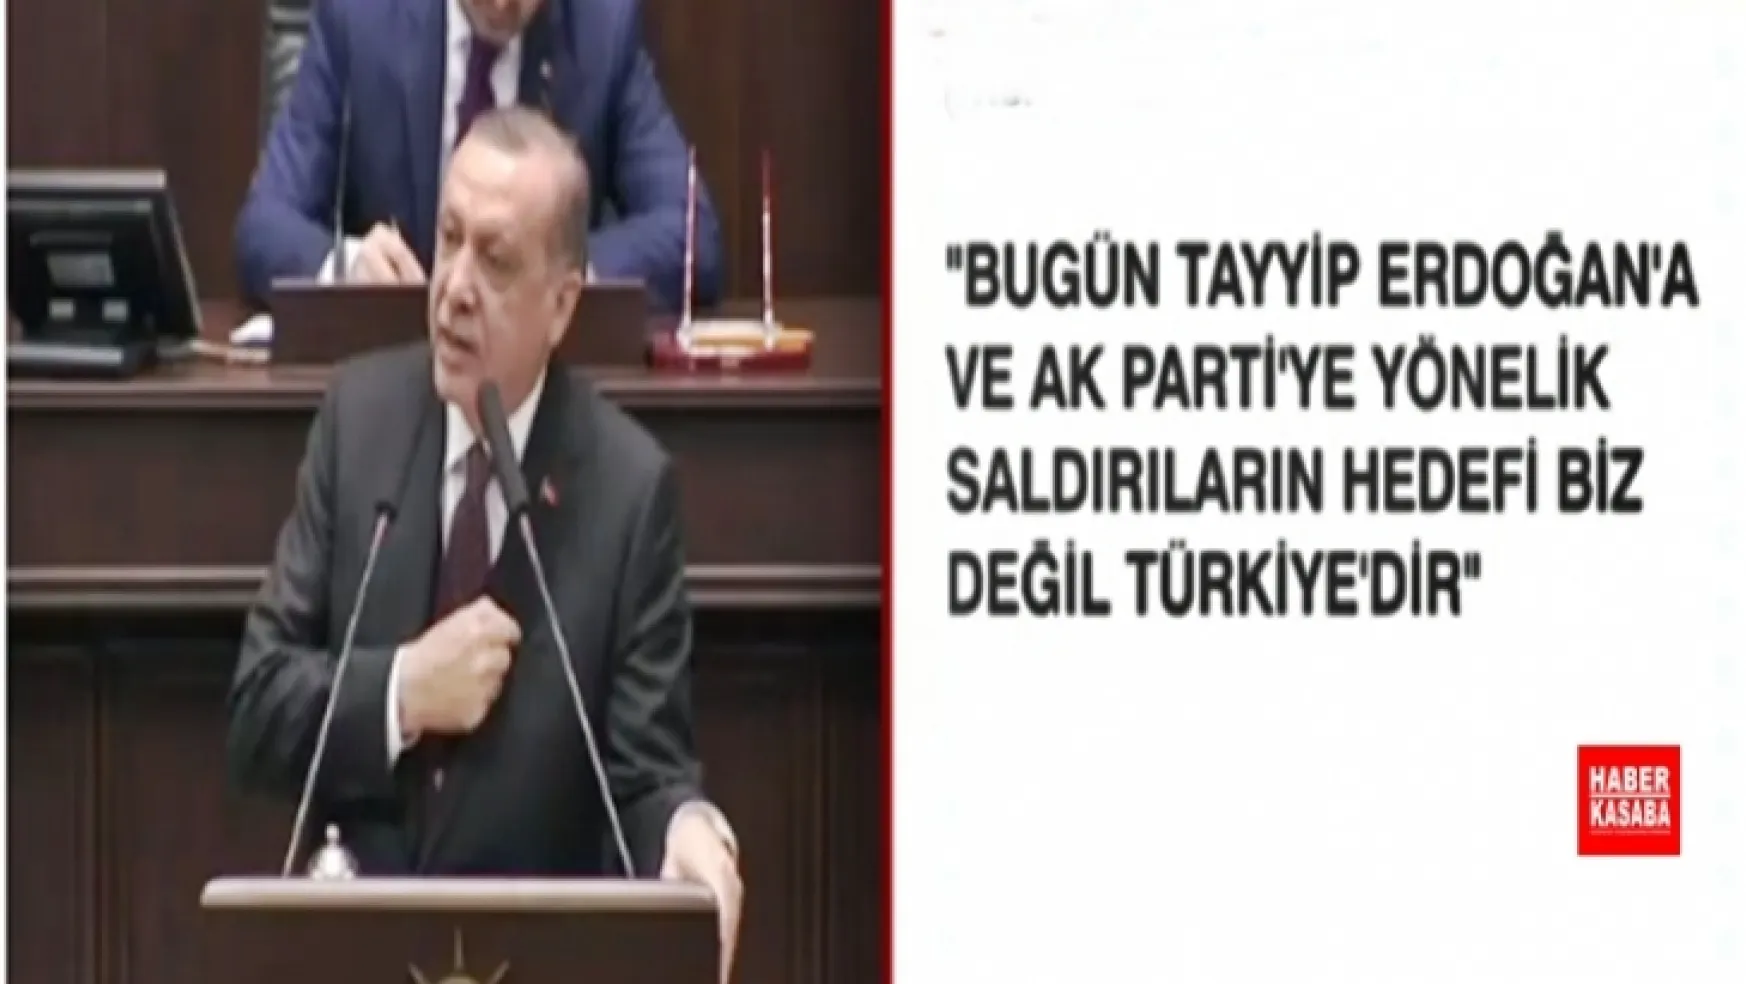 Erdoğan'dan Eski Cumhurbaşkanı Gül'e çok sert sözler